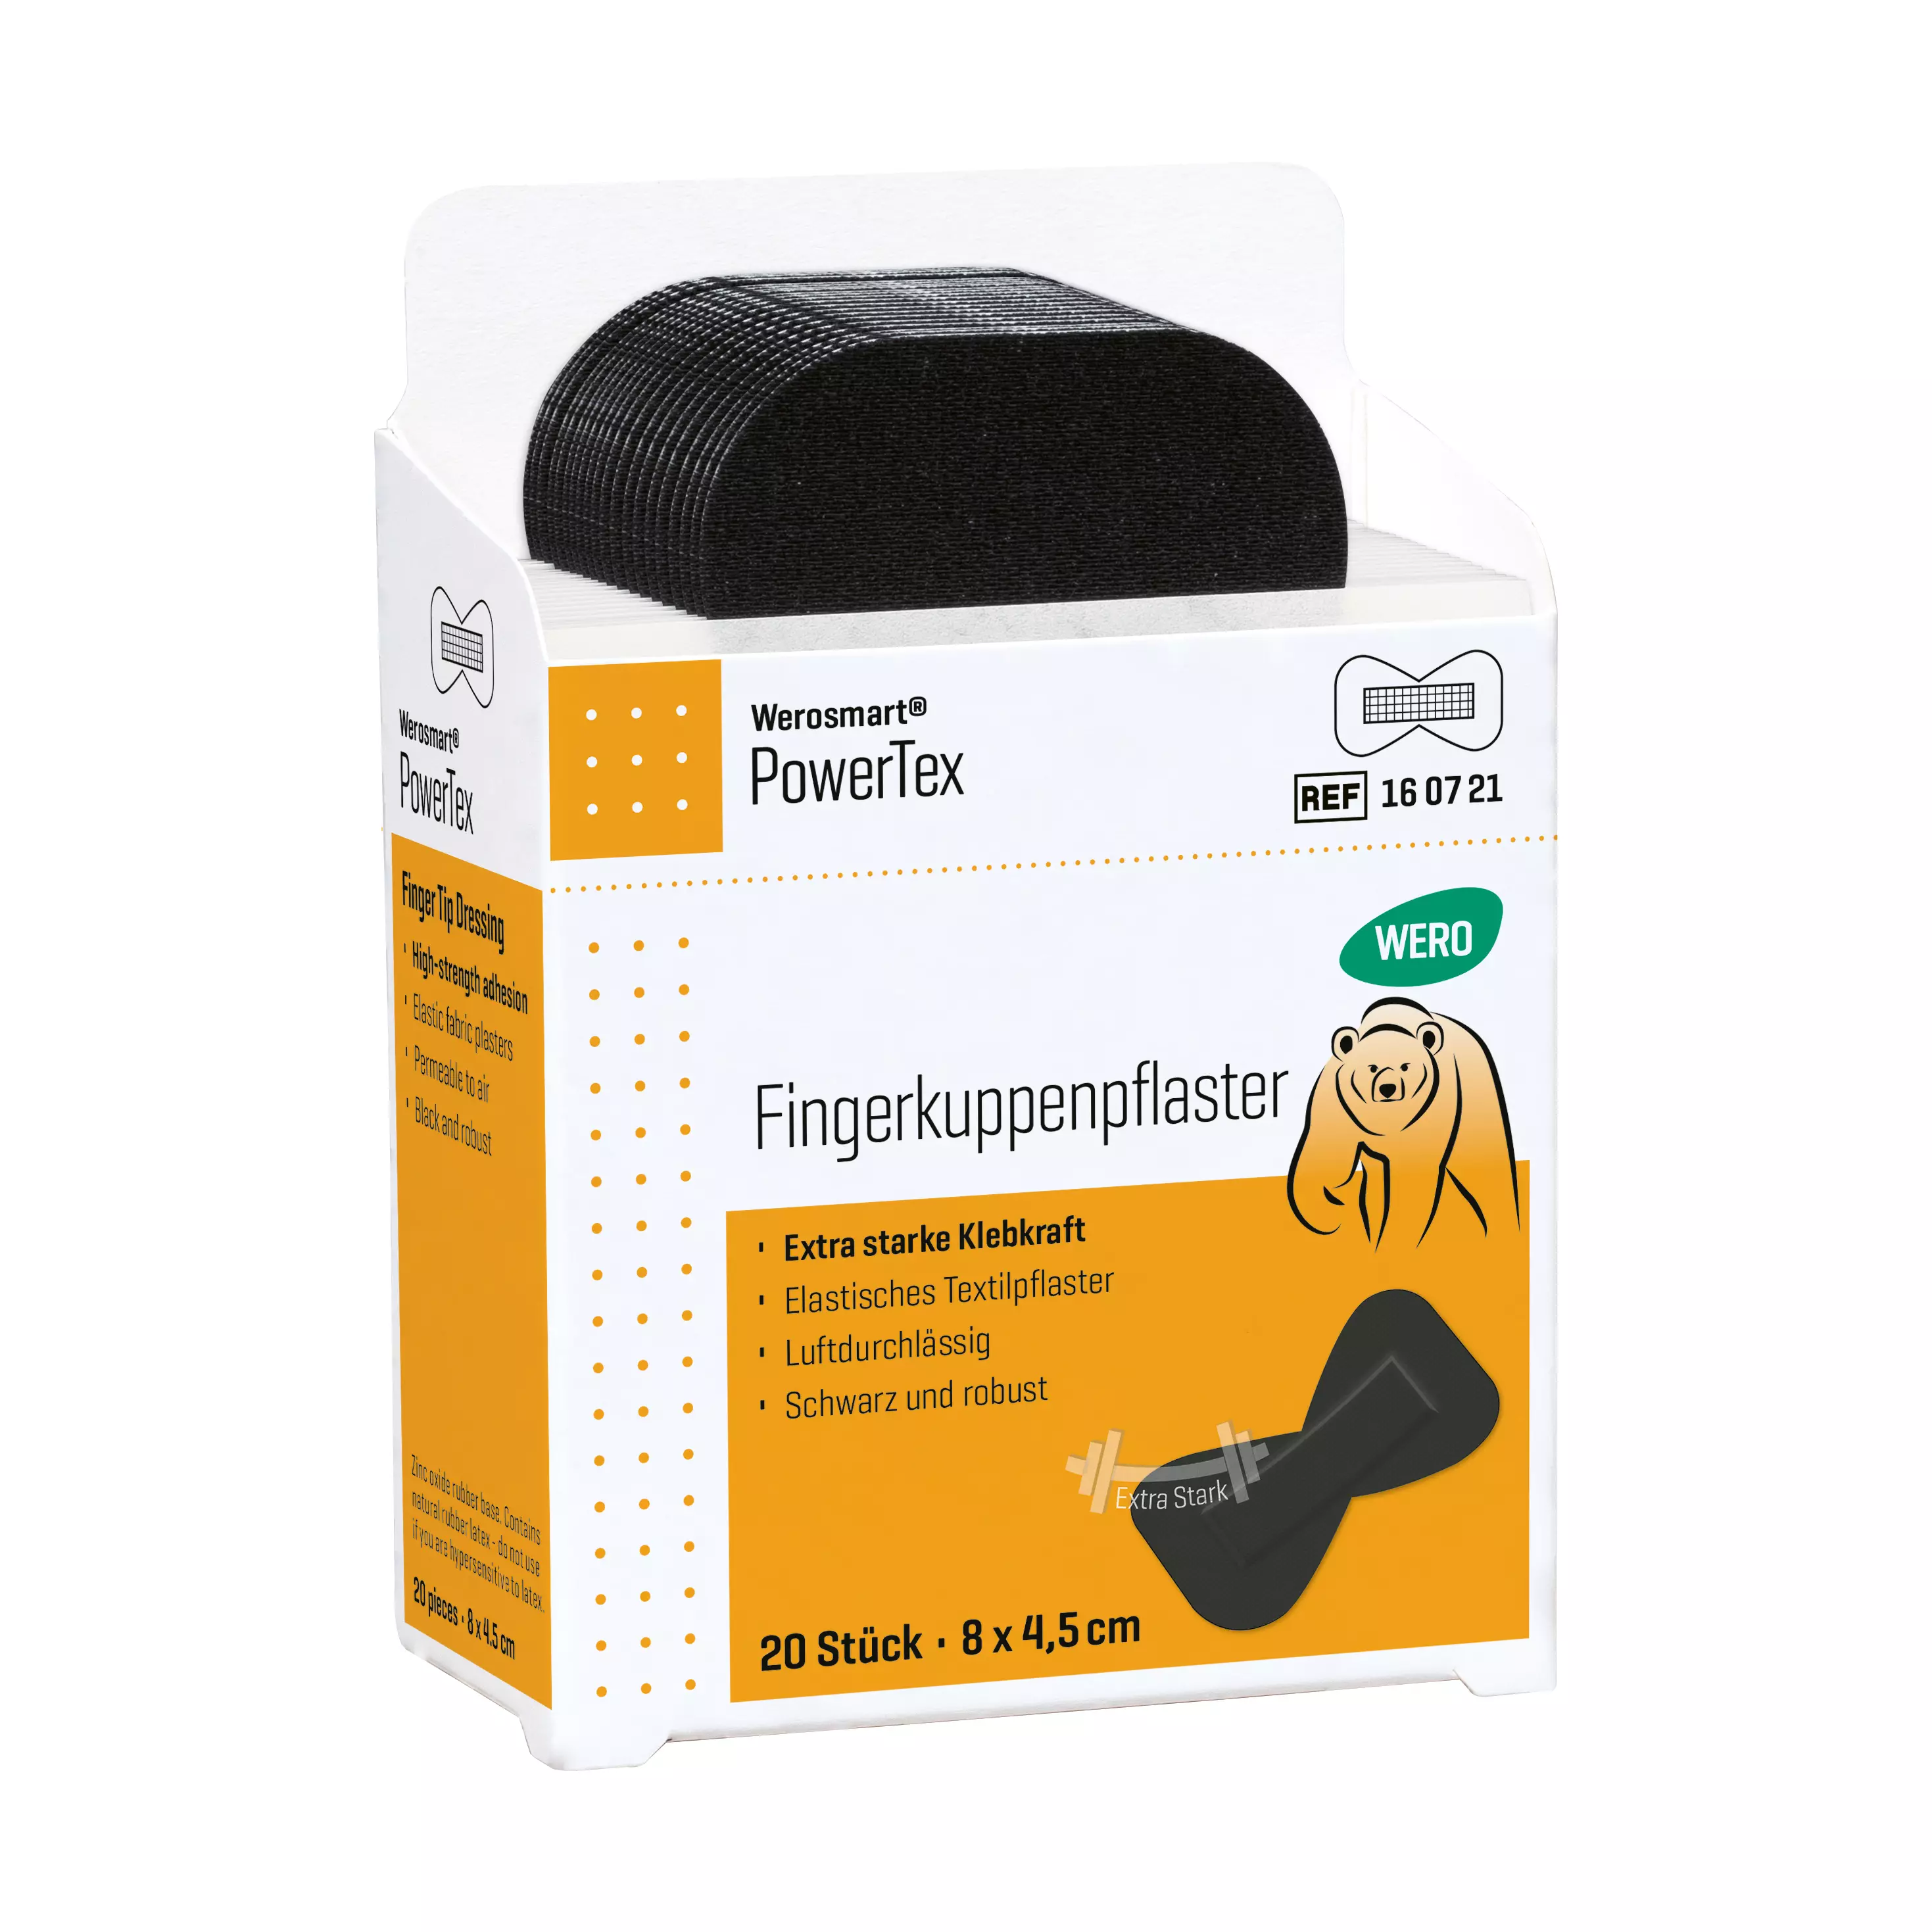 Werosmart® PowerTex plaster dispenser inserts fingertip plasters - 8 cm, insert